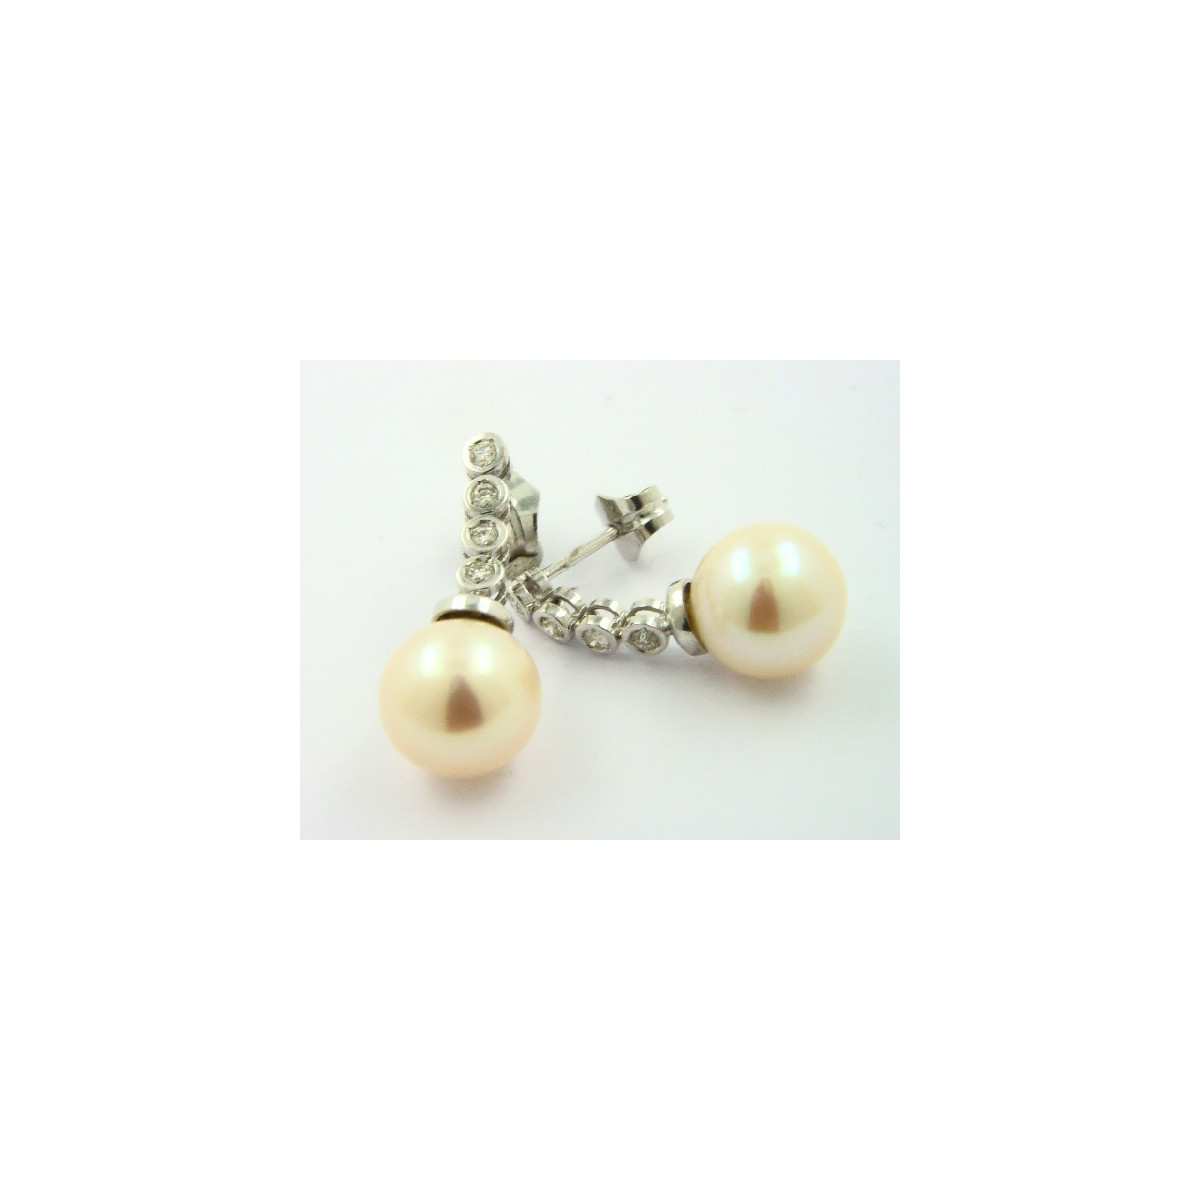 Pendientes oro blanco 750 con brillantes y perla